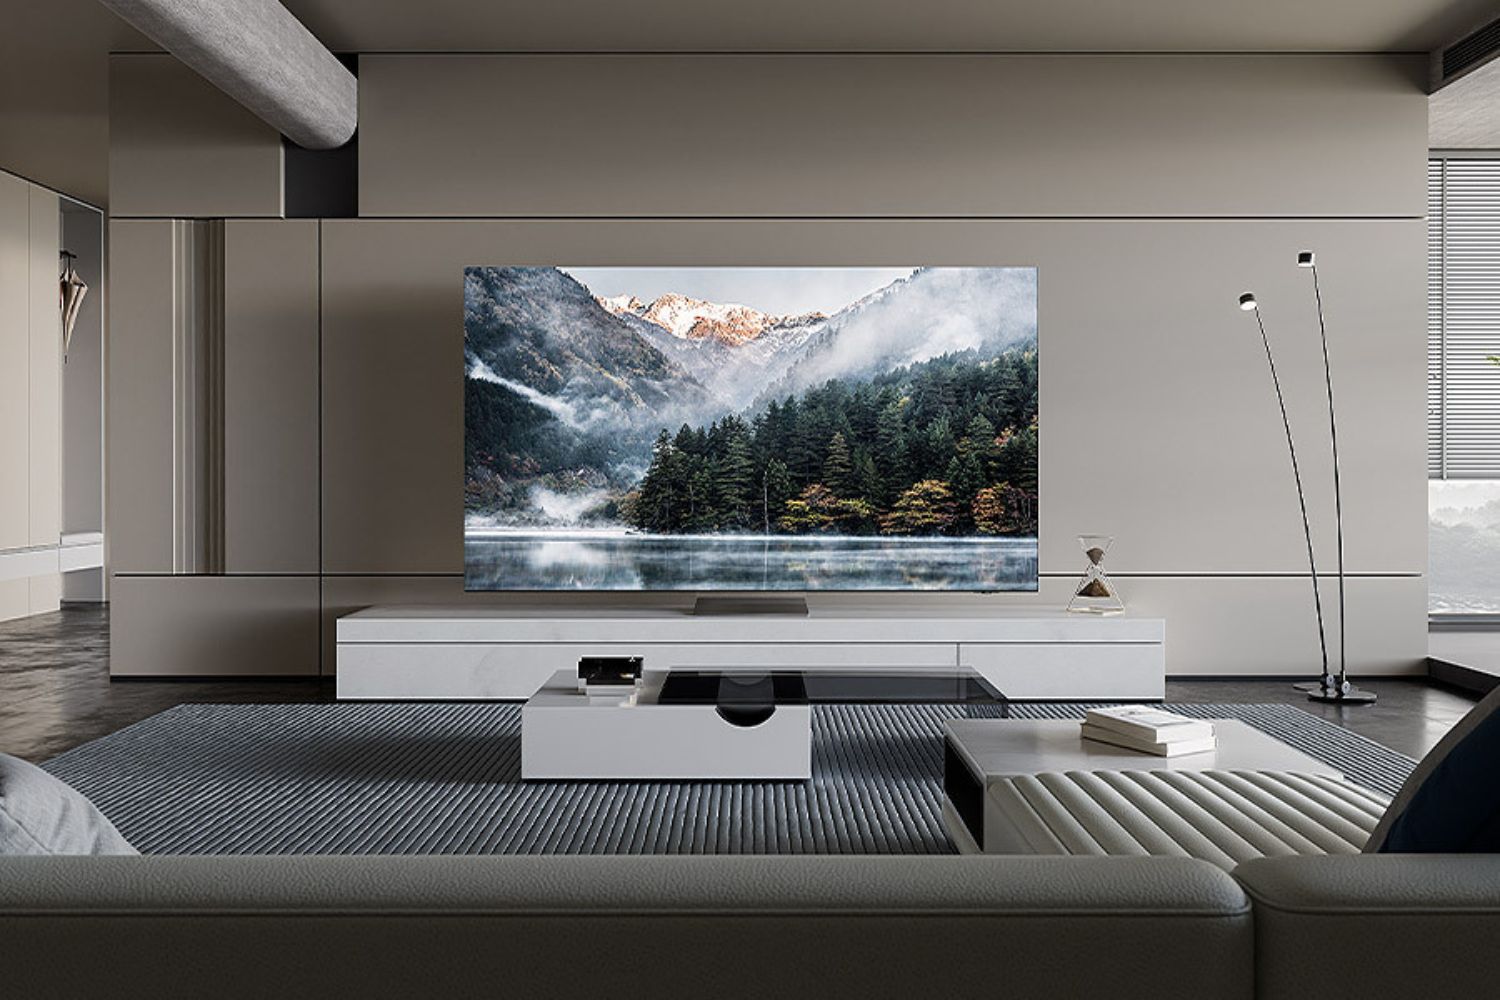 Vous voulez une TV premium ? Samsung affiche des offres inédites jusqu’à -1000€